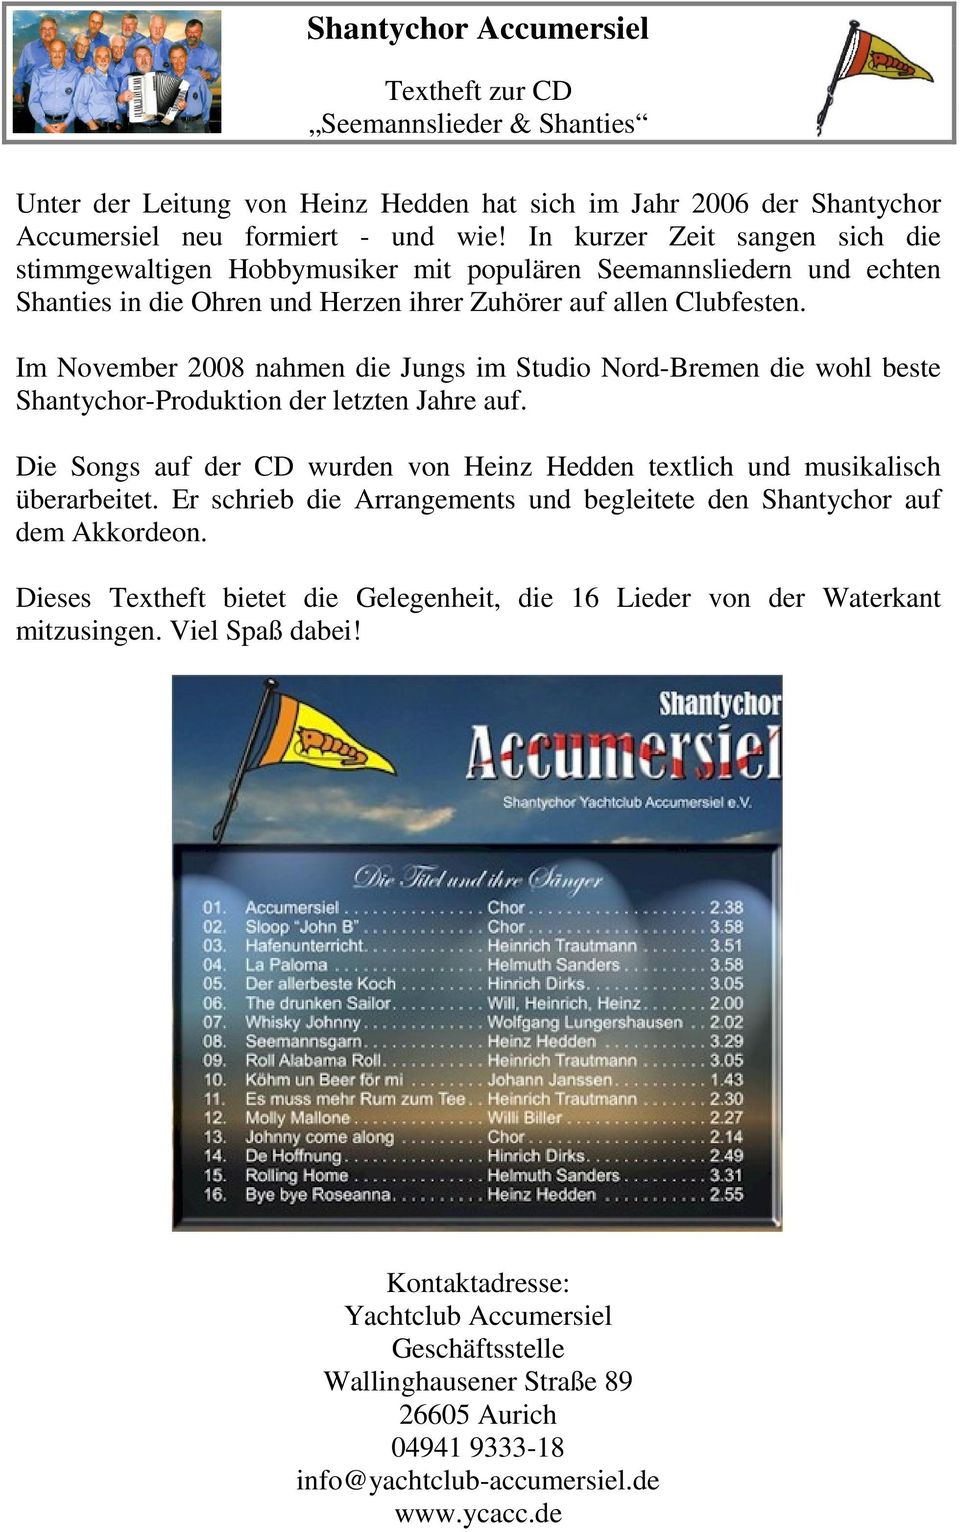 Im November 2008 nahmen die Jungs im Studio Nord-Bremen die wohl beste Shantychor-Produktion der letzten Jahre auf. Die Songs auf der CD wurden von Heinz Hedden textlich und musikalisch überarbeitet.